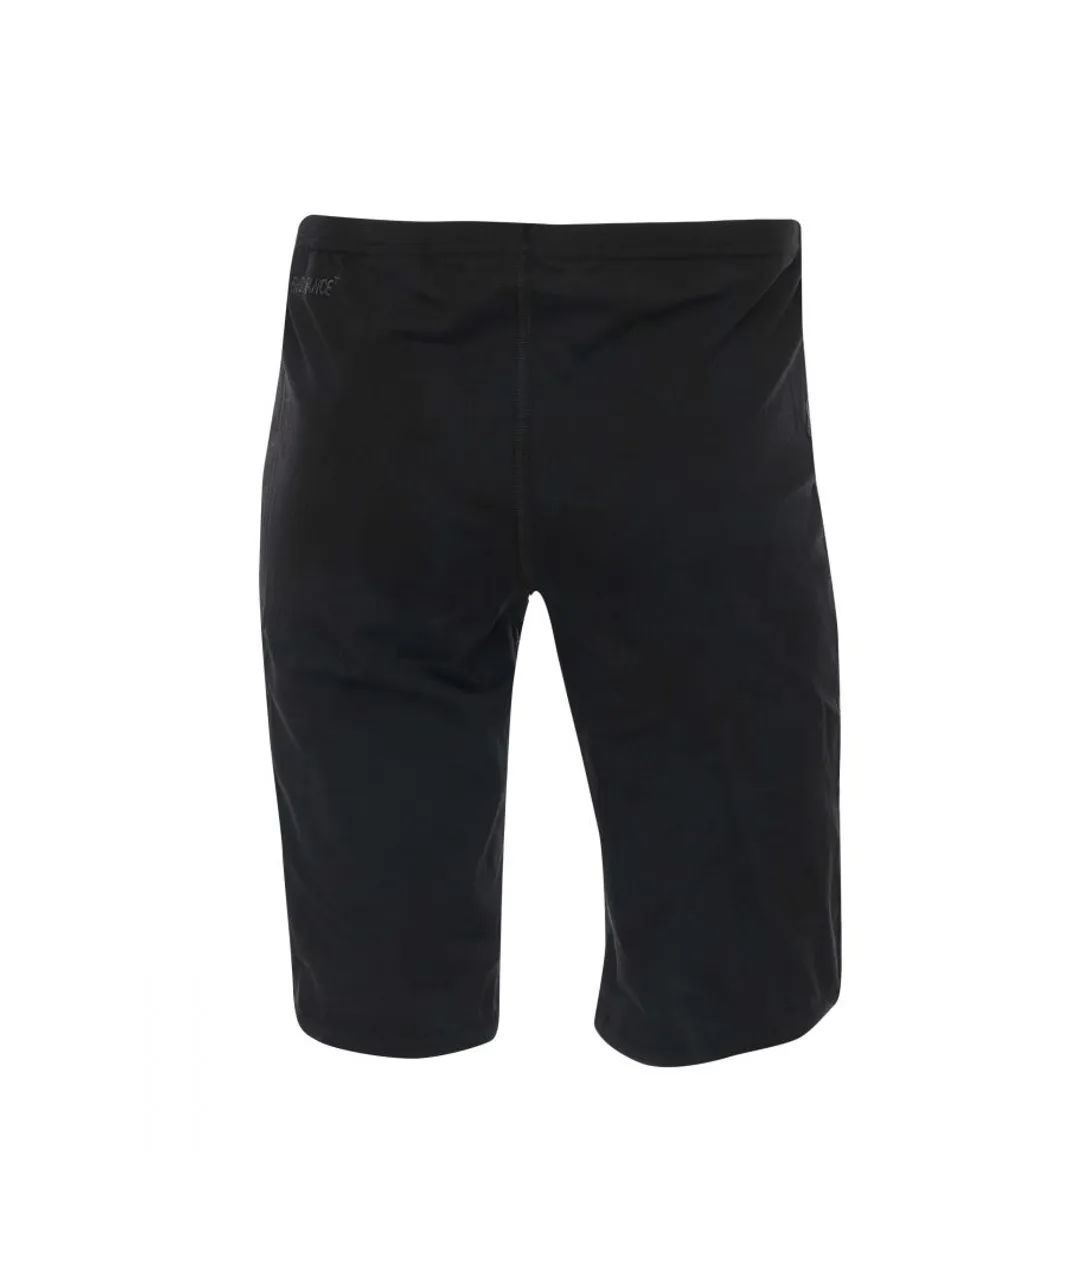 Speedo Boys Boy's Essentials End Jammer Swim Shorts in Black